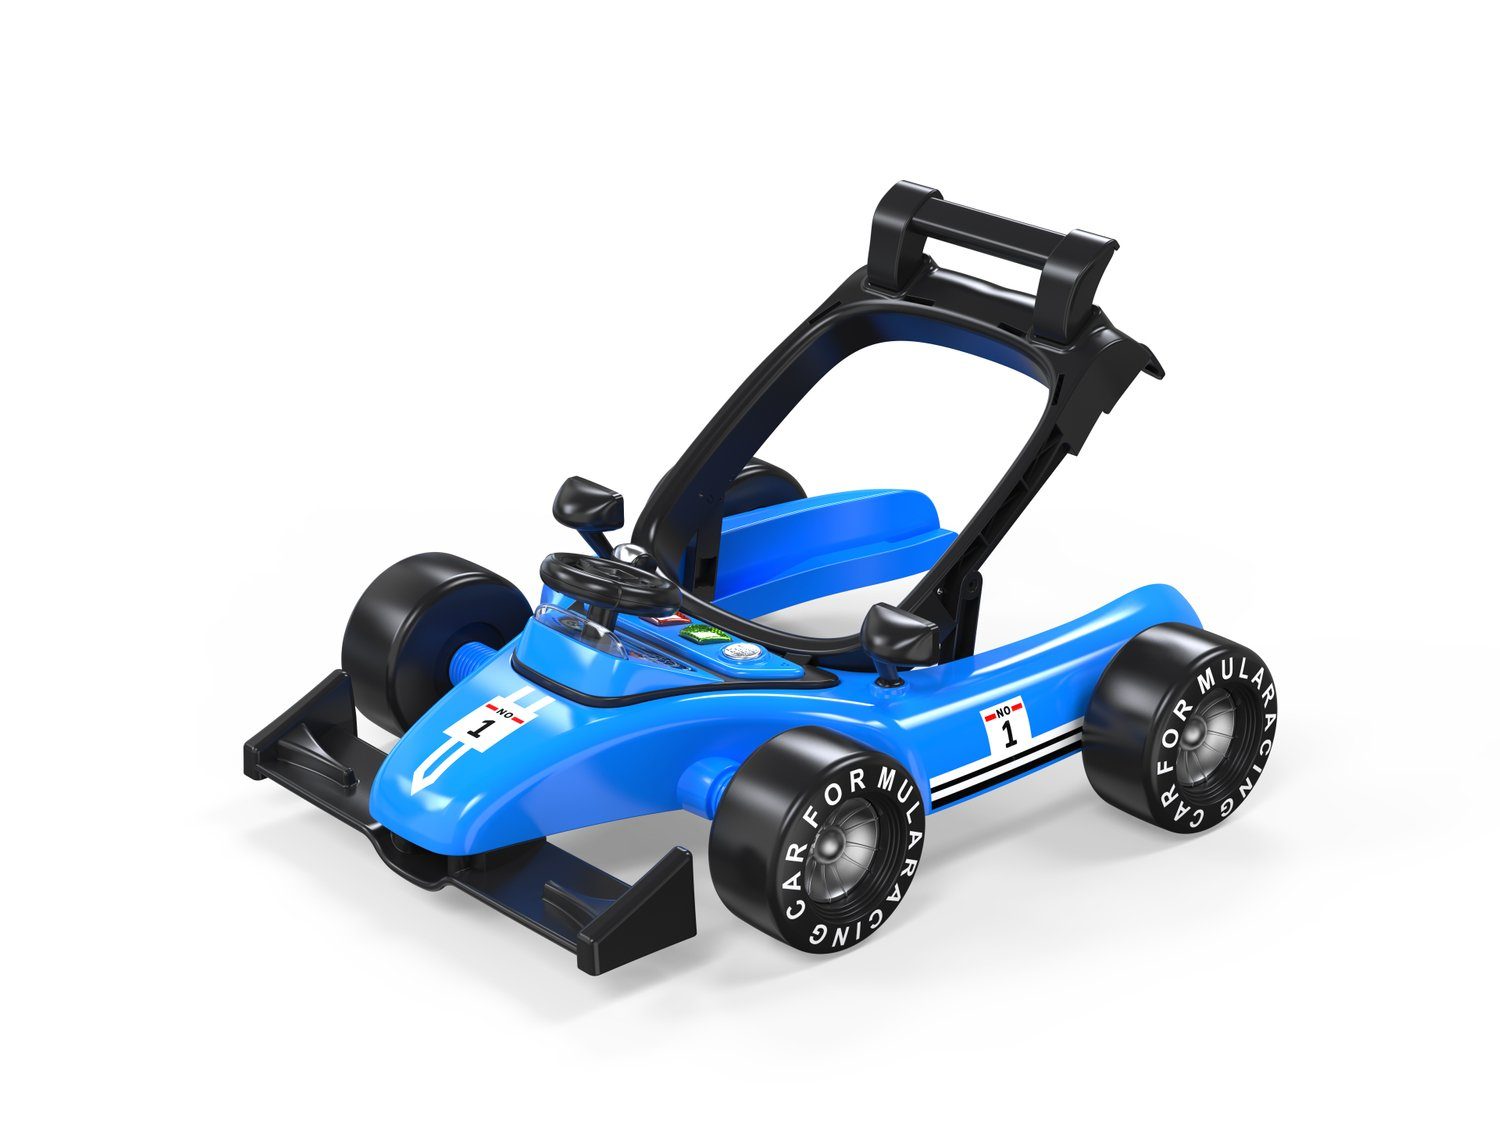 höhenverstellbar 1, Sportivo Auto-Design blau 2 in Chipolino Laufwagen Lauflernhilfe Lauflernhilfe